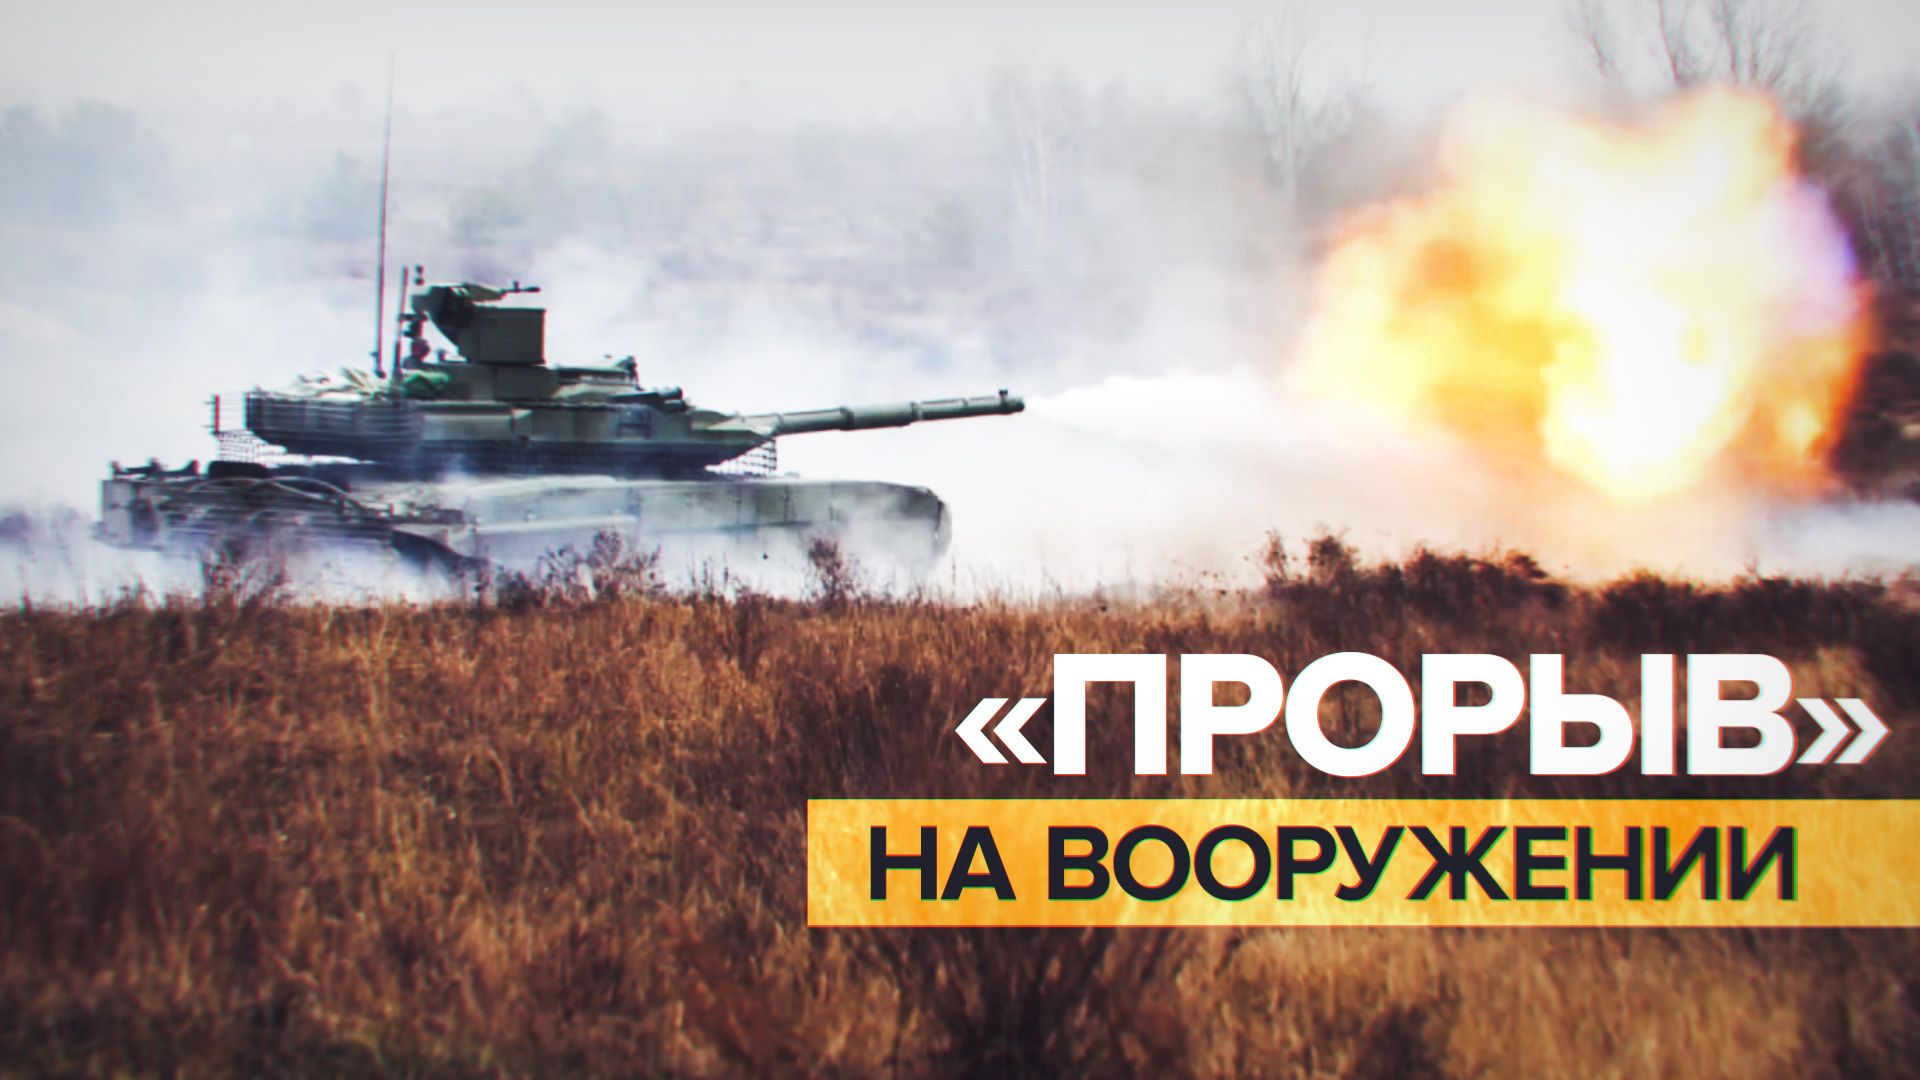 Танковая мощь: экипажи Т-90М «Прорыв» готовятся к выполнению боевых задач